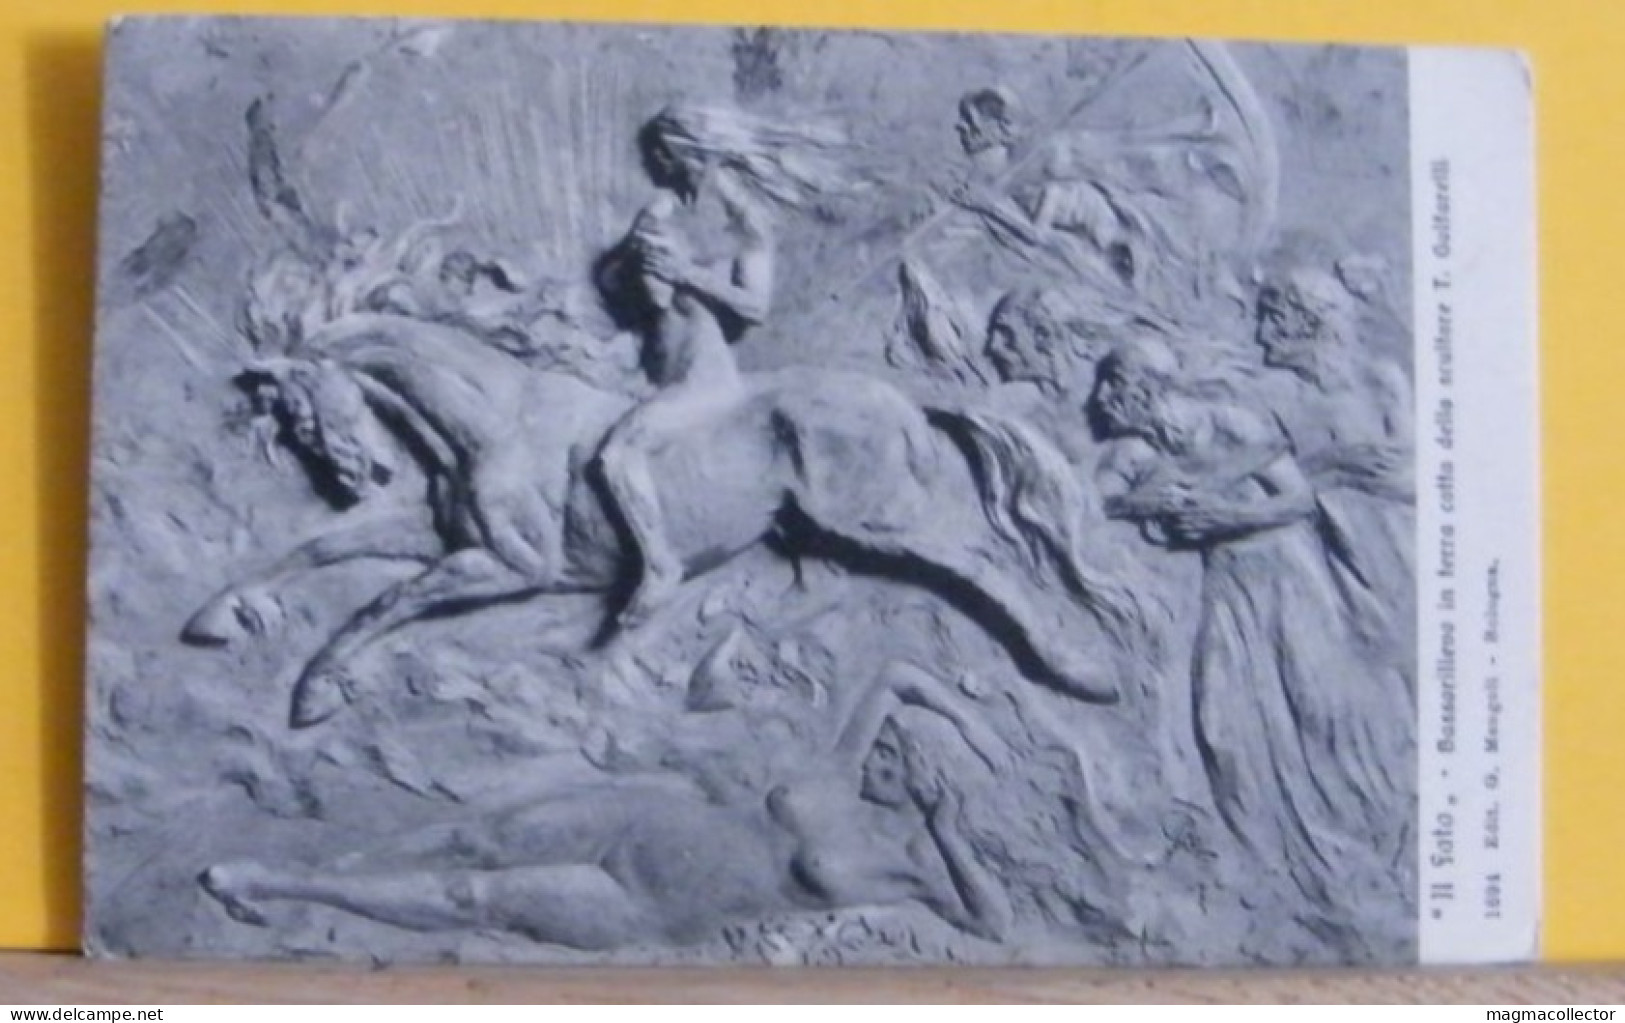 (ART3)TULLO - GOLFARELLI - IL FATO (ERINNI)  BASSORILIEVO (BOLOGNA MUSEO DEL RISORGIMENTO) - IL FATO  - VIAGGIATA 1918 - Sculptures